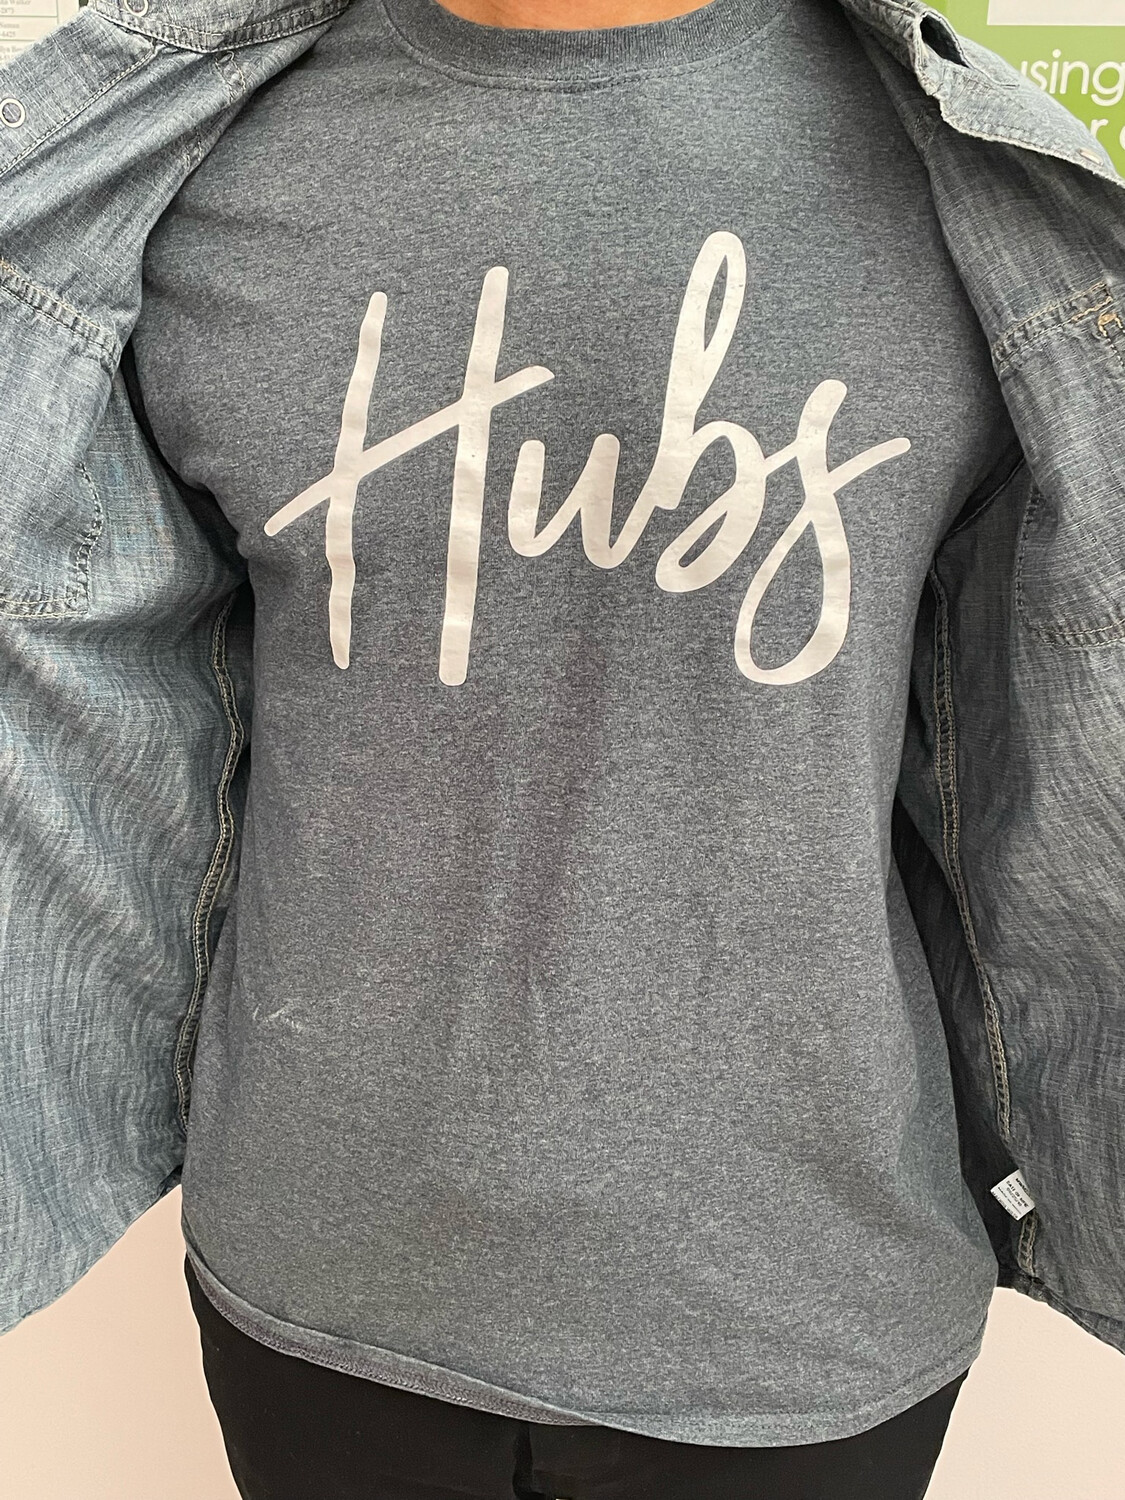 Hubs T-Shirt